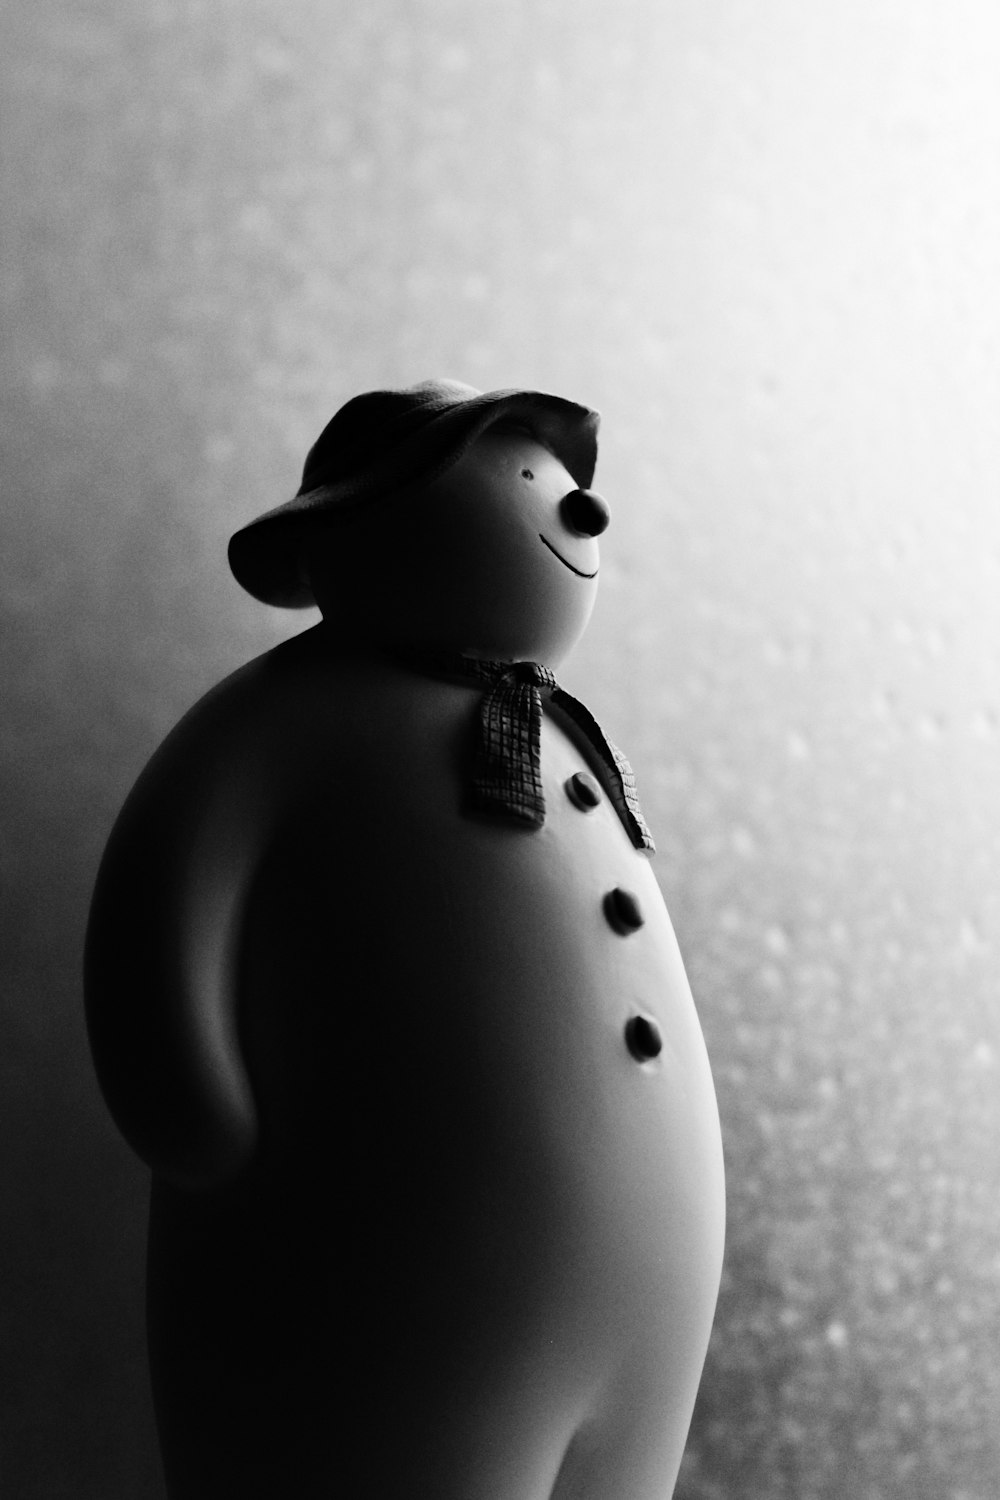 fotografia in scala di grigi della figurina del pupazzo di neve